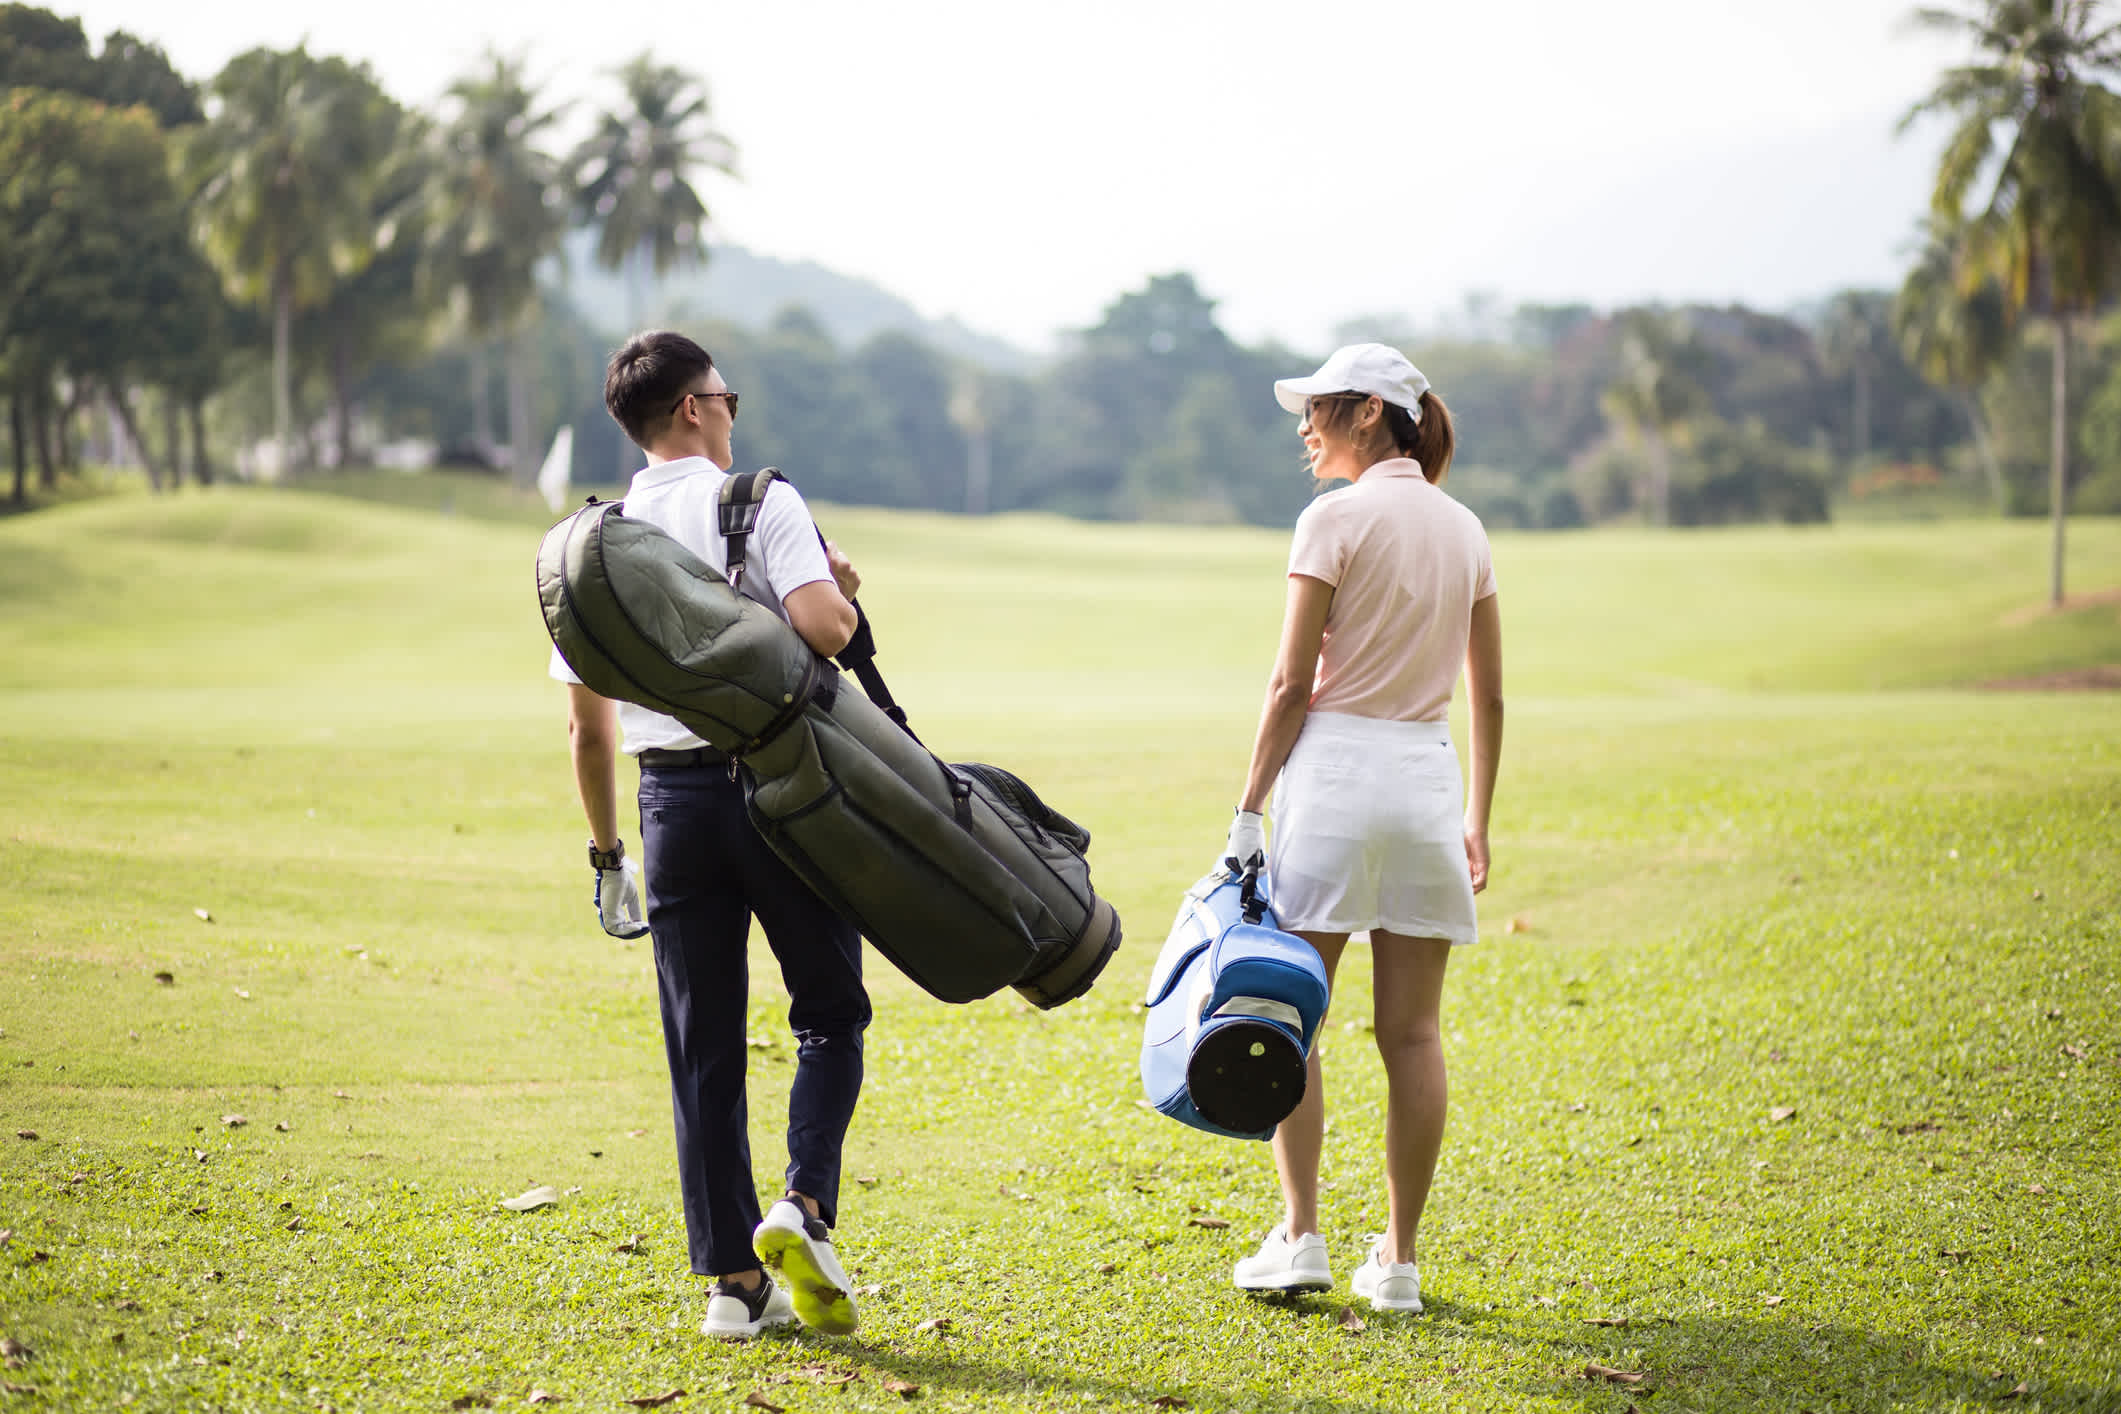 Asiatisches Paar zu Fuß zusammen auf dem Golfplatz mit ihren Golftaschen.

